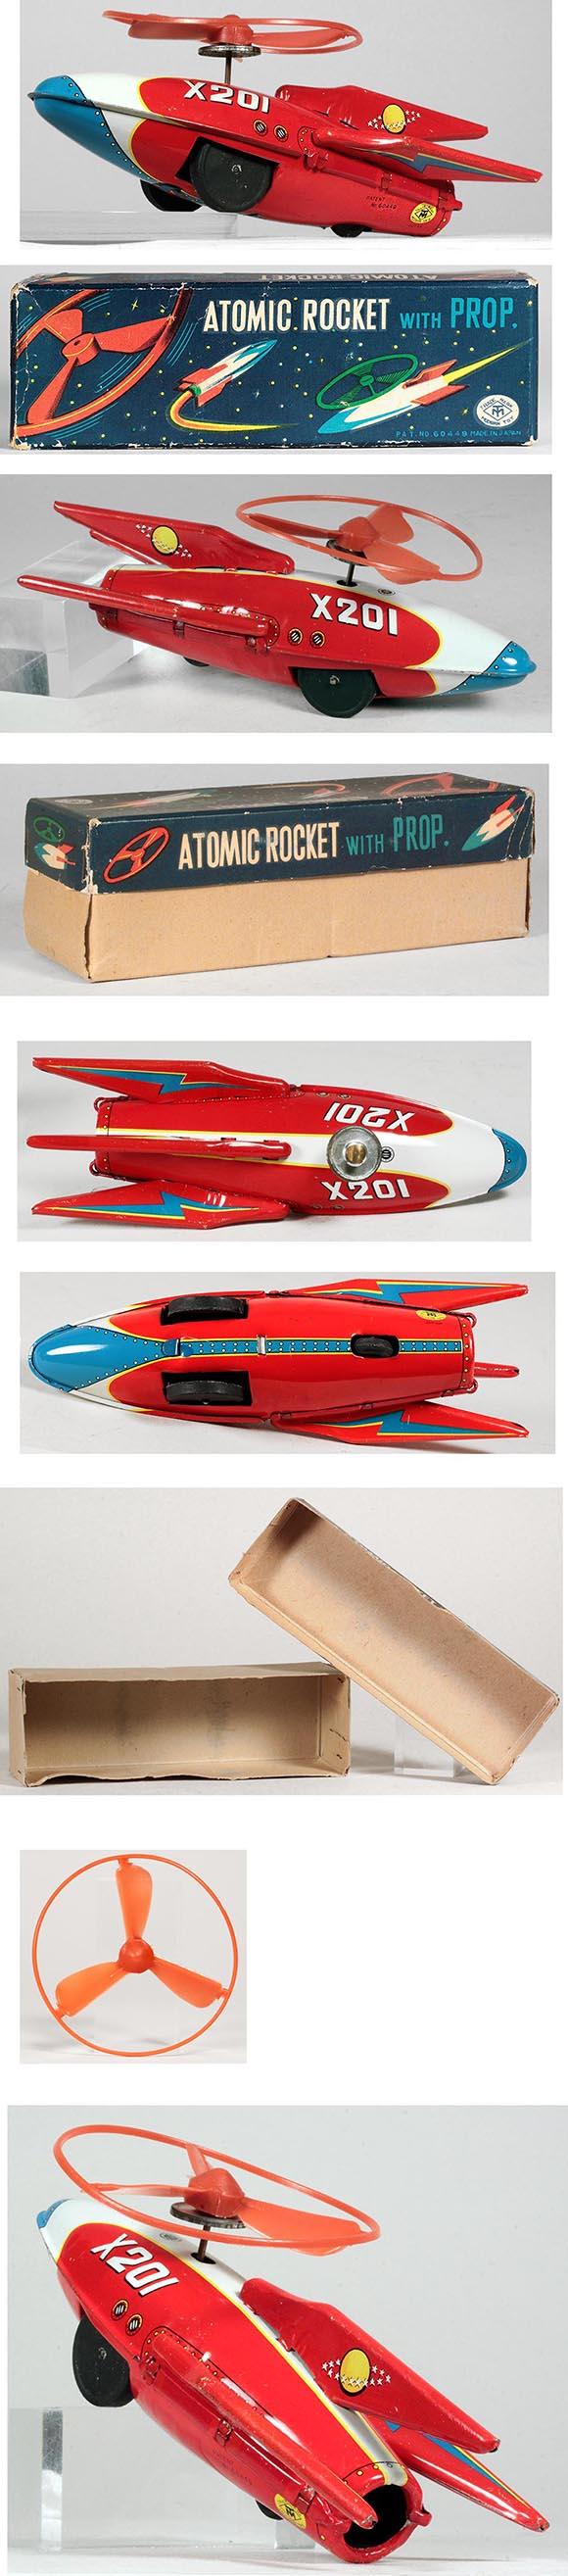 c.1955 Masudaya Atomic Rocket X201 w/Propeller in Original Box